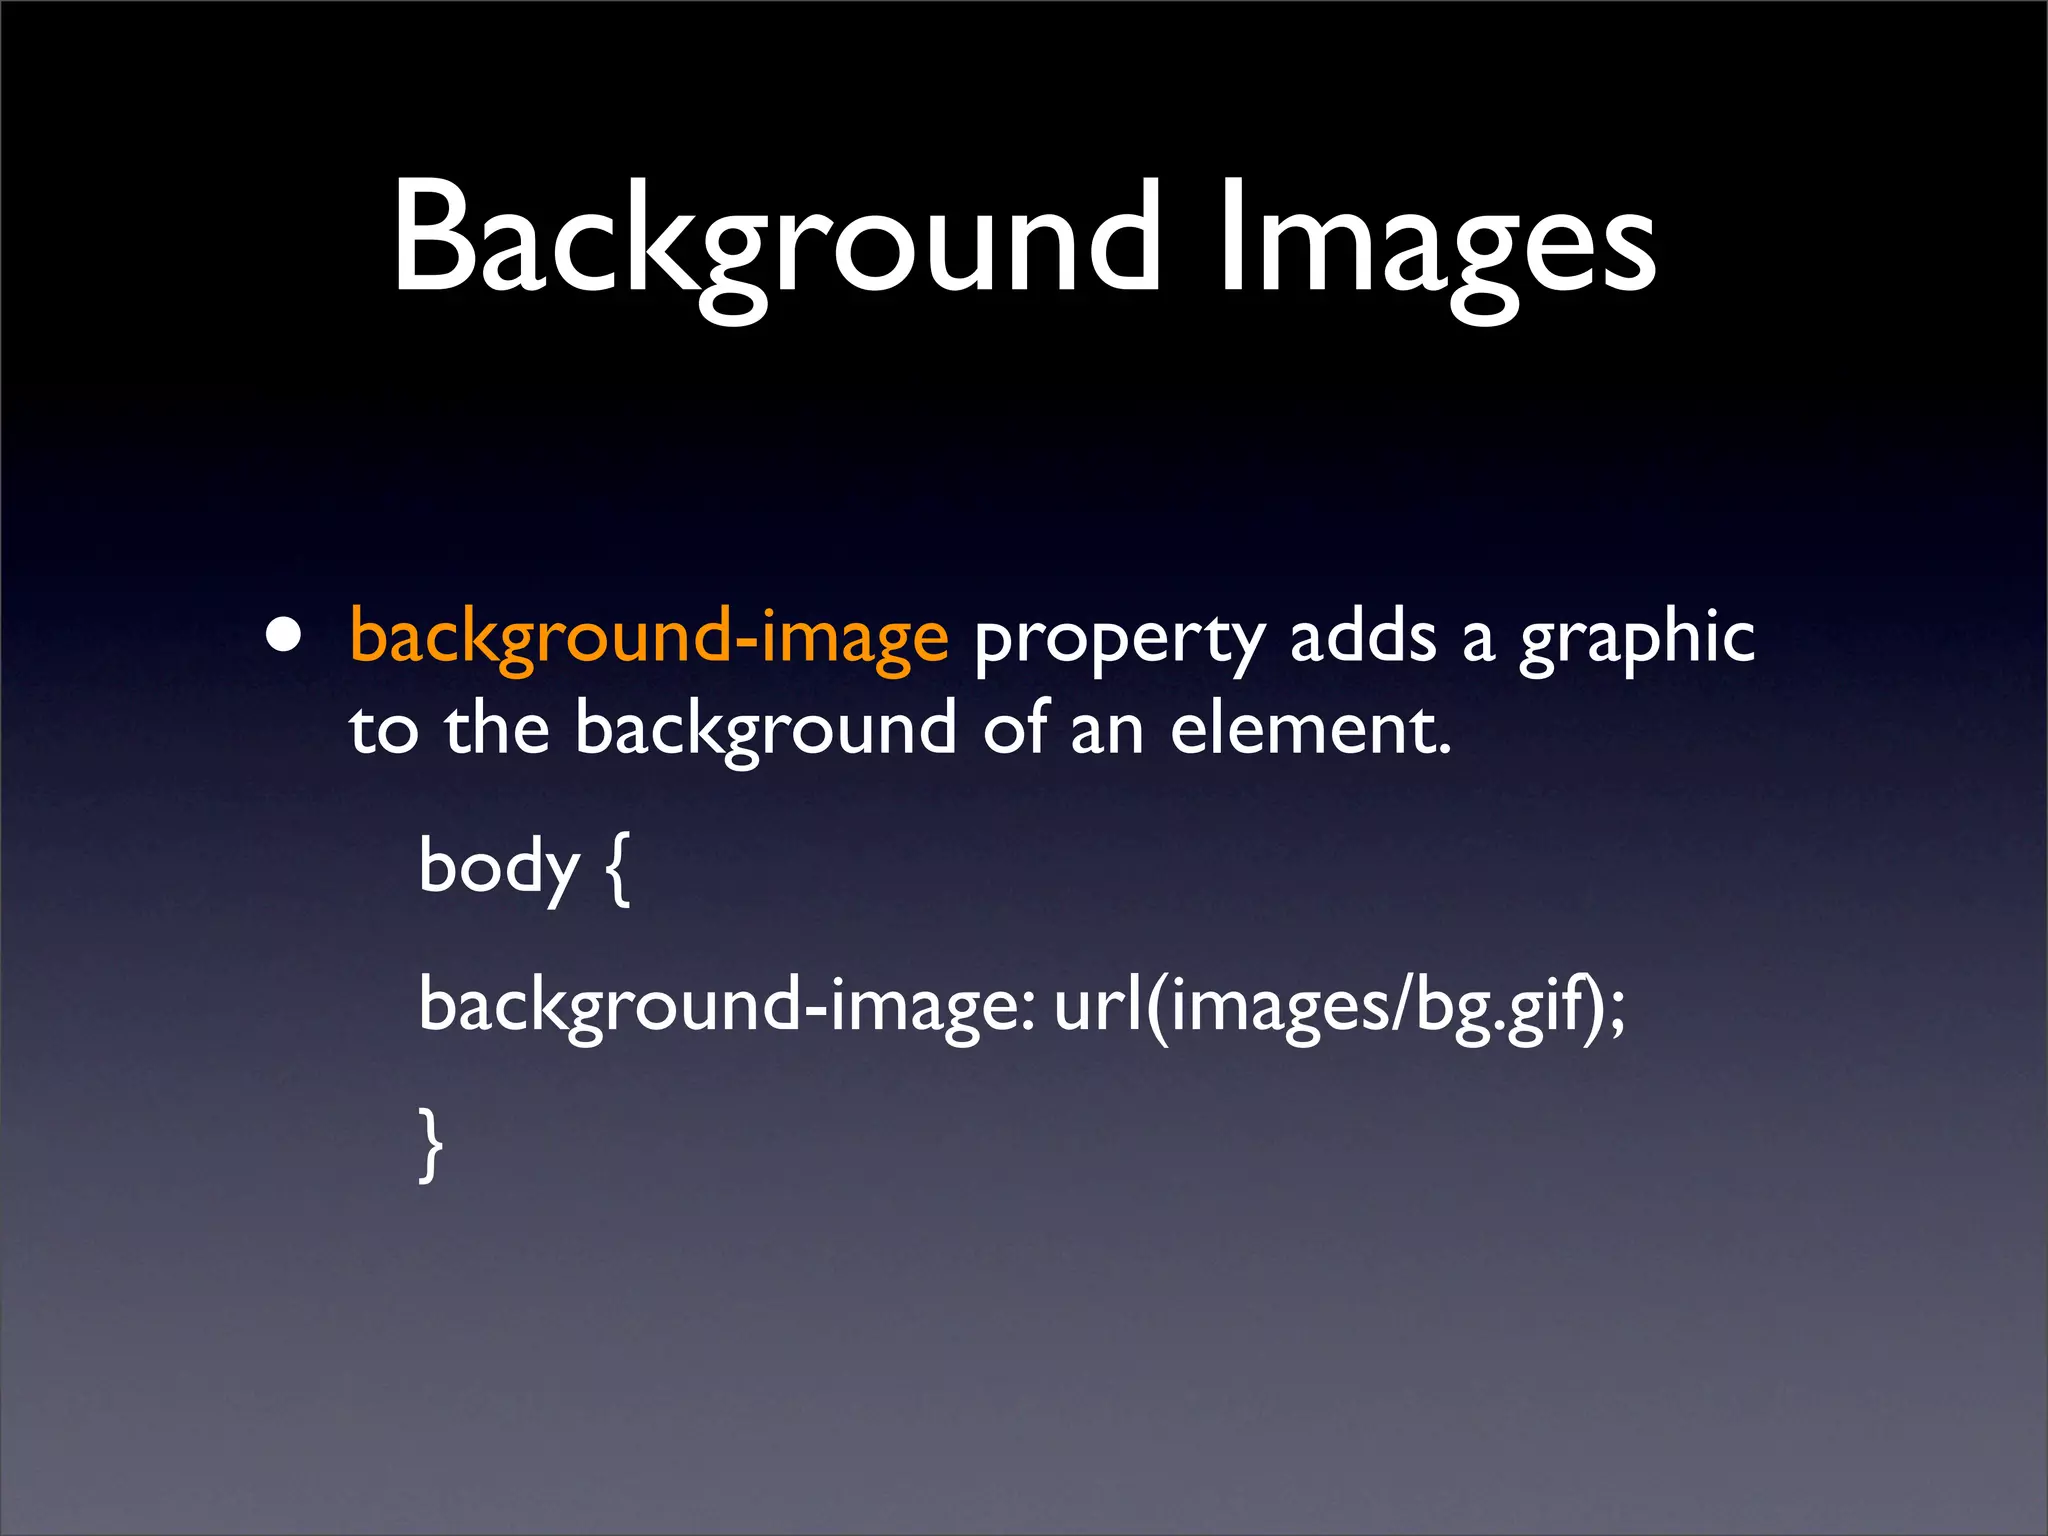 Background Images: Hình ảnh nền có thể thay đổi hoàn toàn không gian của trang web của bạn. Hãy xem hình ảnh liên quan đến từ khóa này để khám phá những ý tưởng sáng tạo cho hình ảnh nền của trang web.